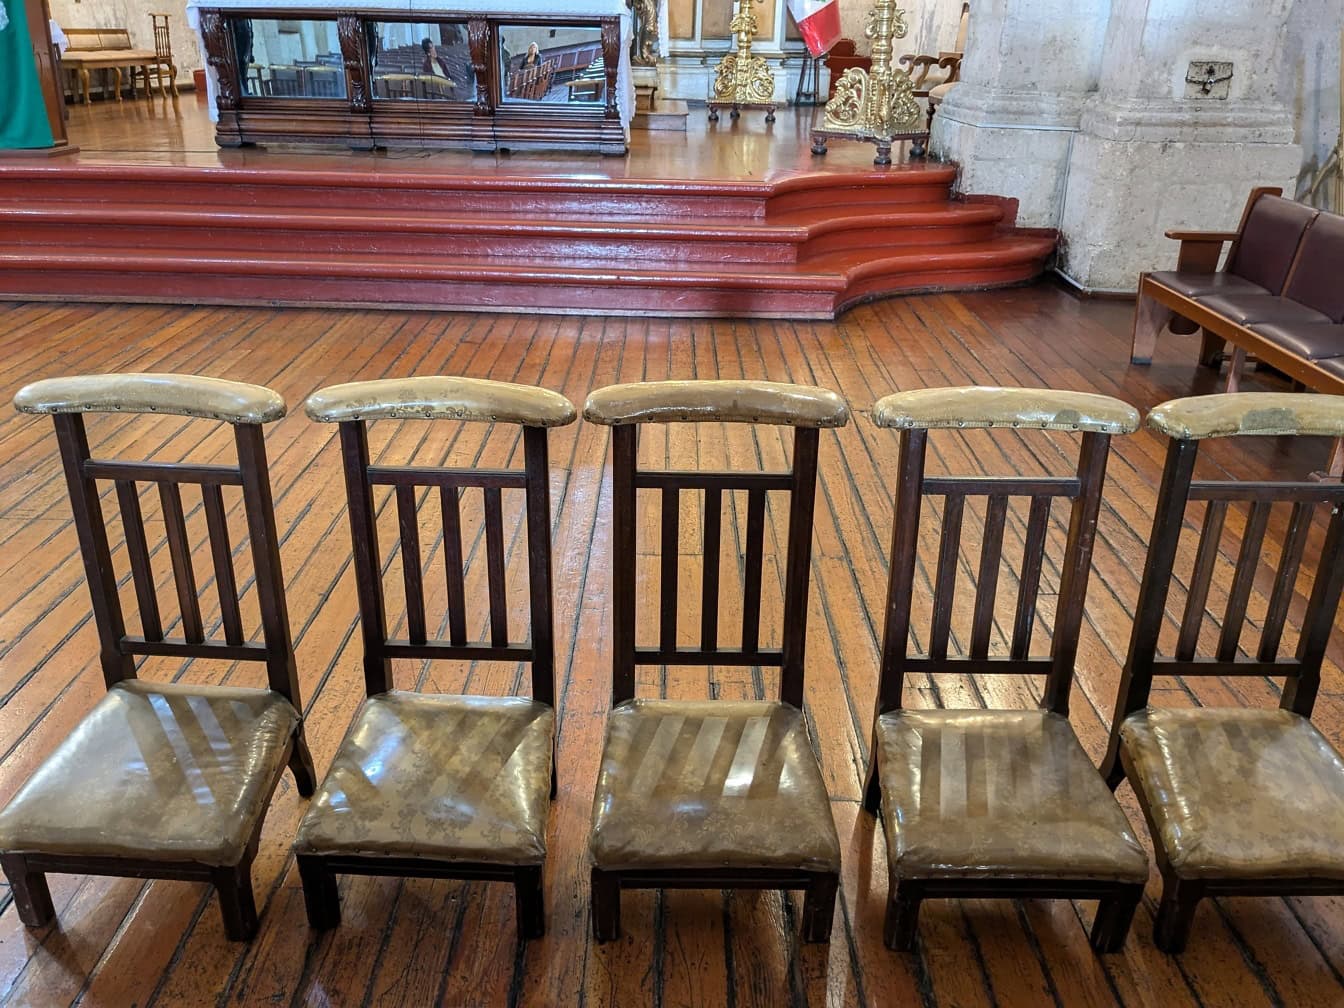 Rangée de vieilles chaises en bois dans une église catholique au Pérou